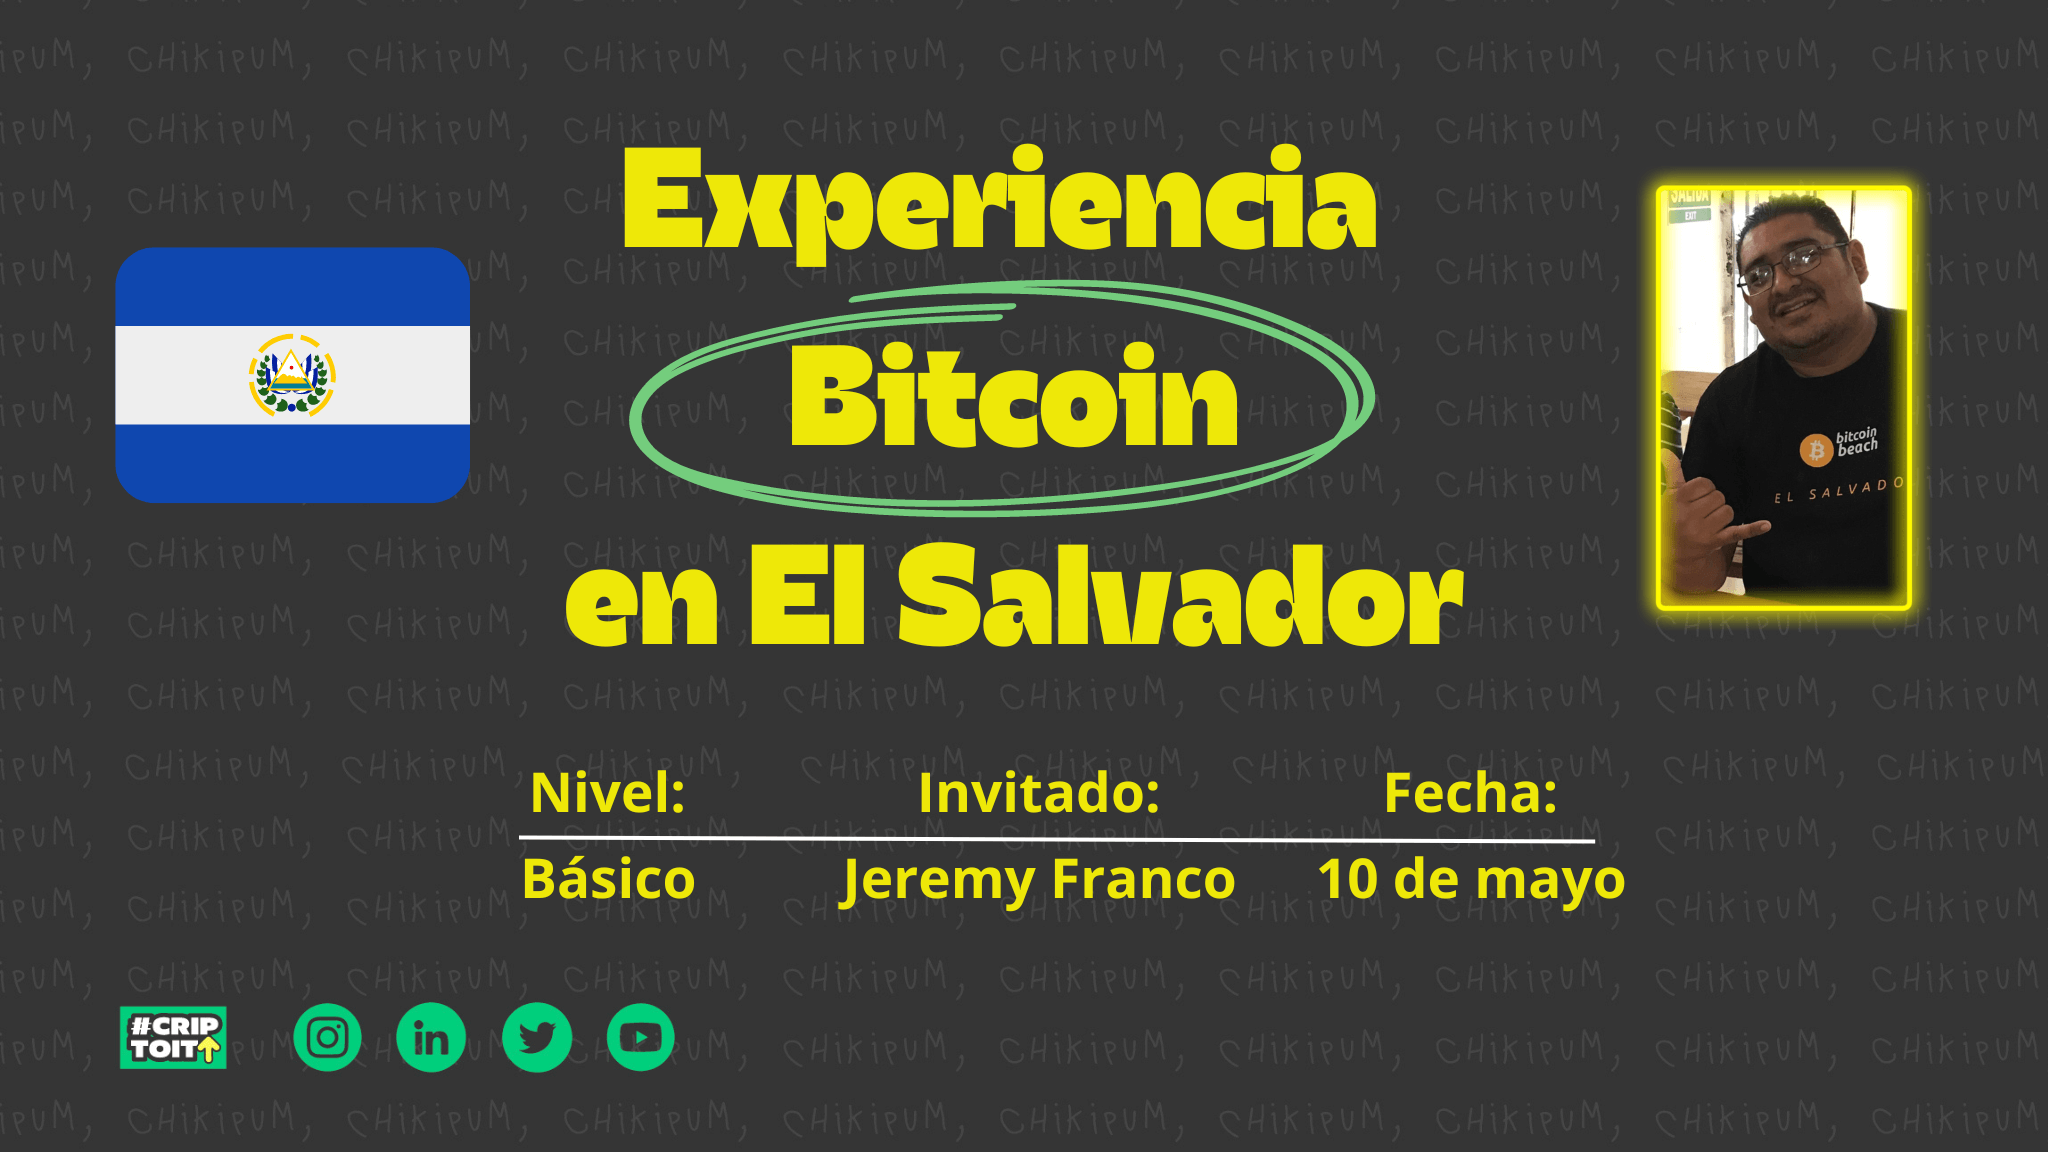 Experiencia Bitcoin: El Salvador